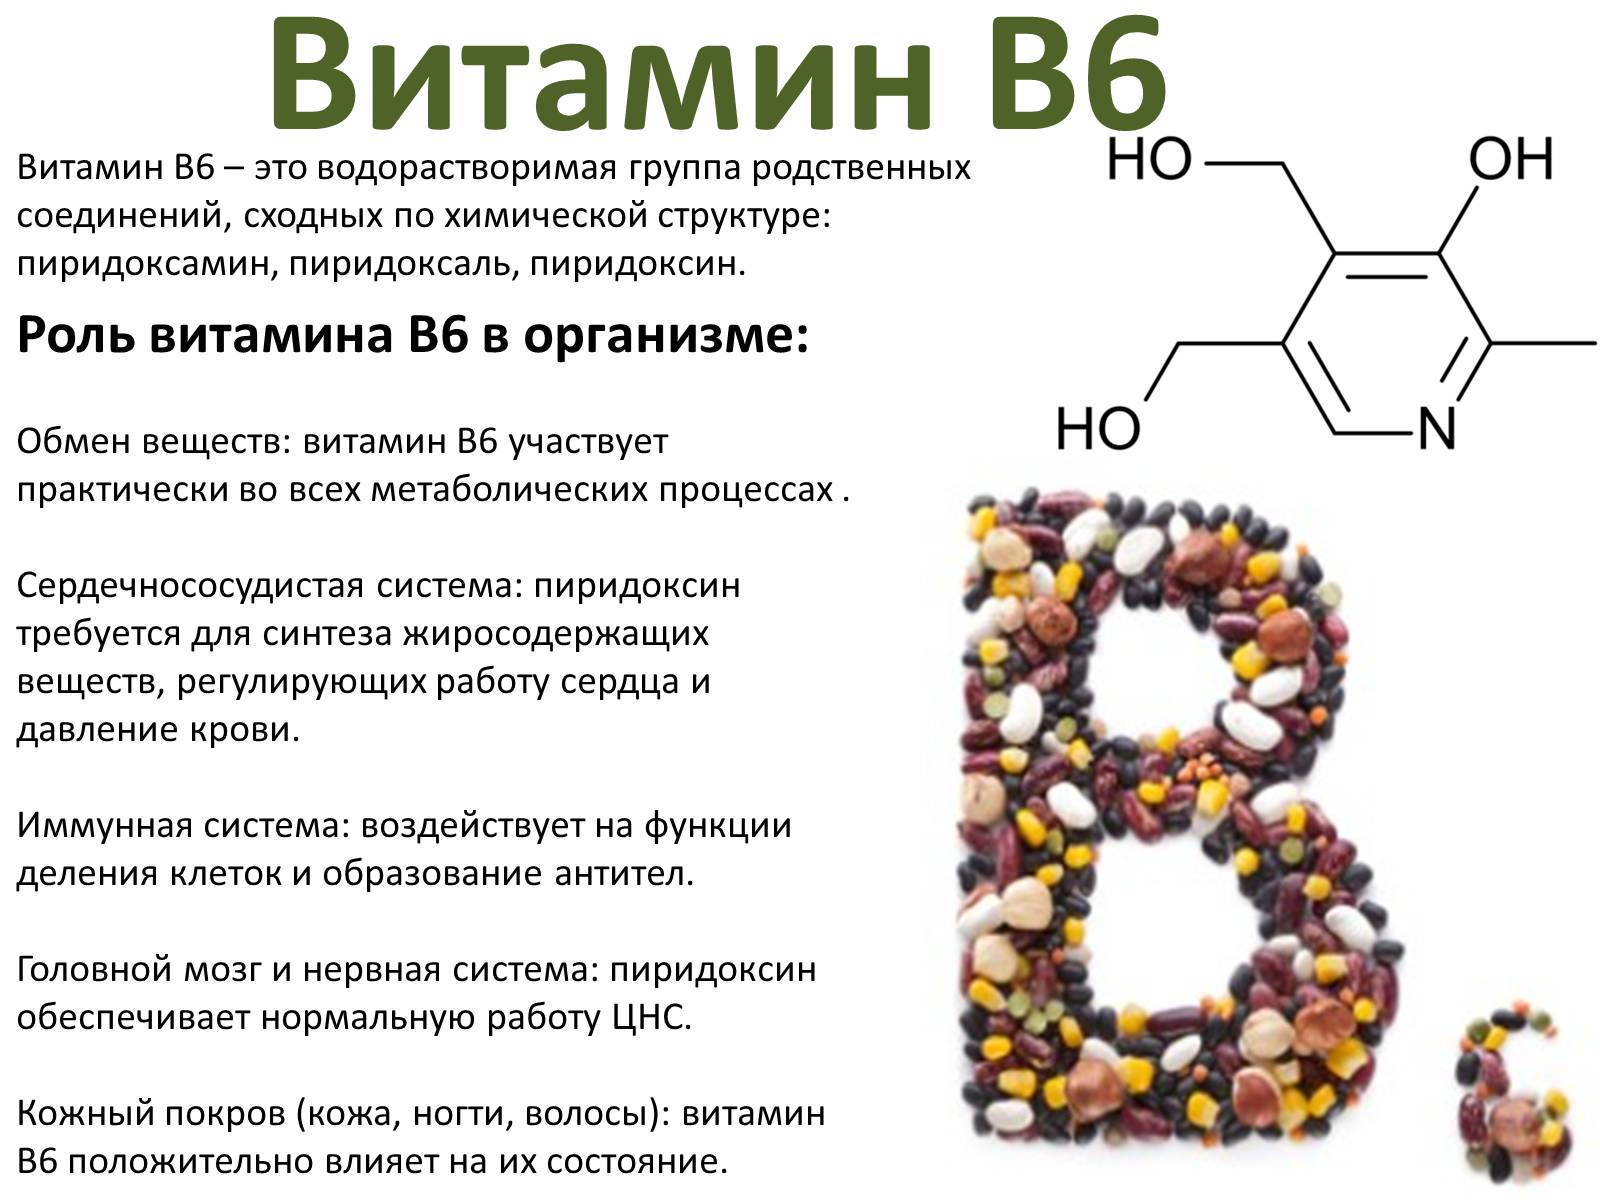 Б6 побочки. Формула и роль витамина в6. Витамин в6 физиологическое название. Рибофлавин (витамин в12. Роль витамина b6 в организме человека.